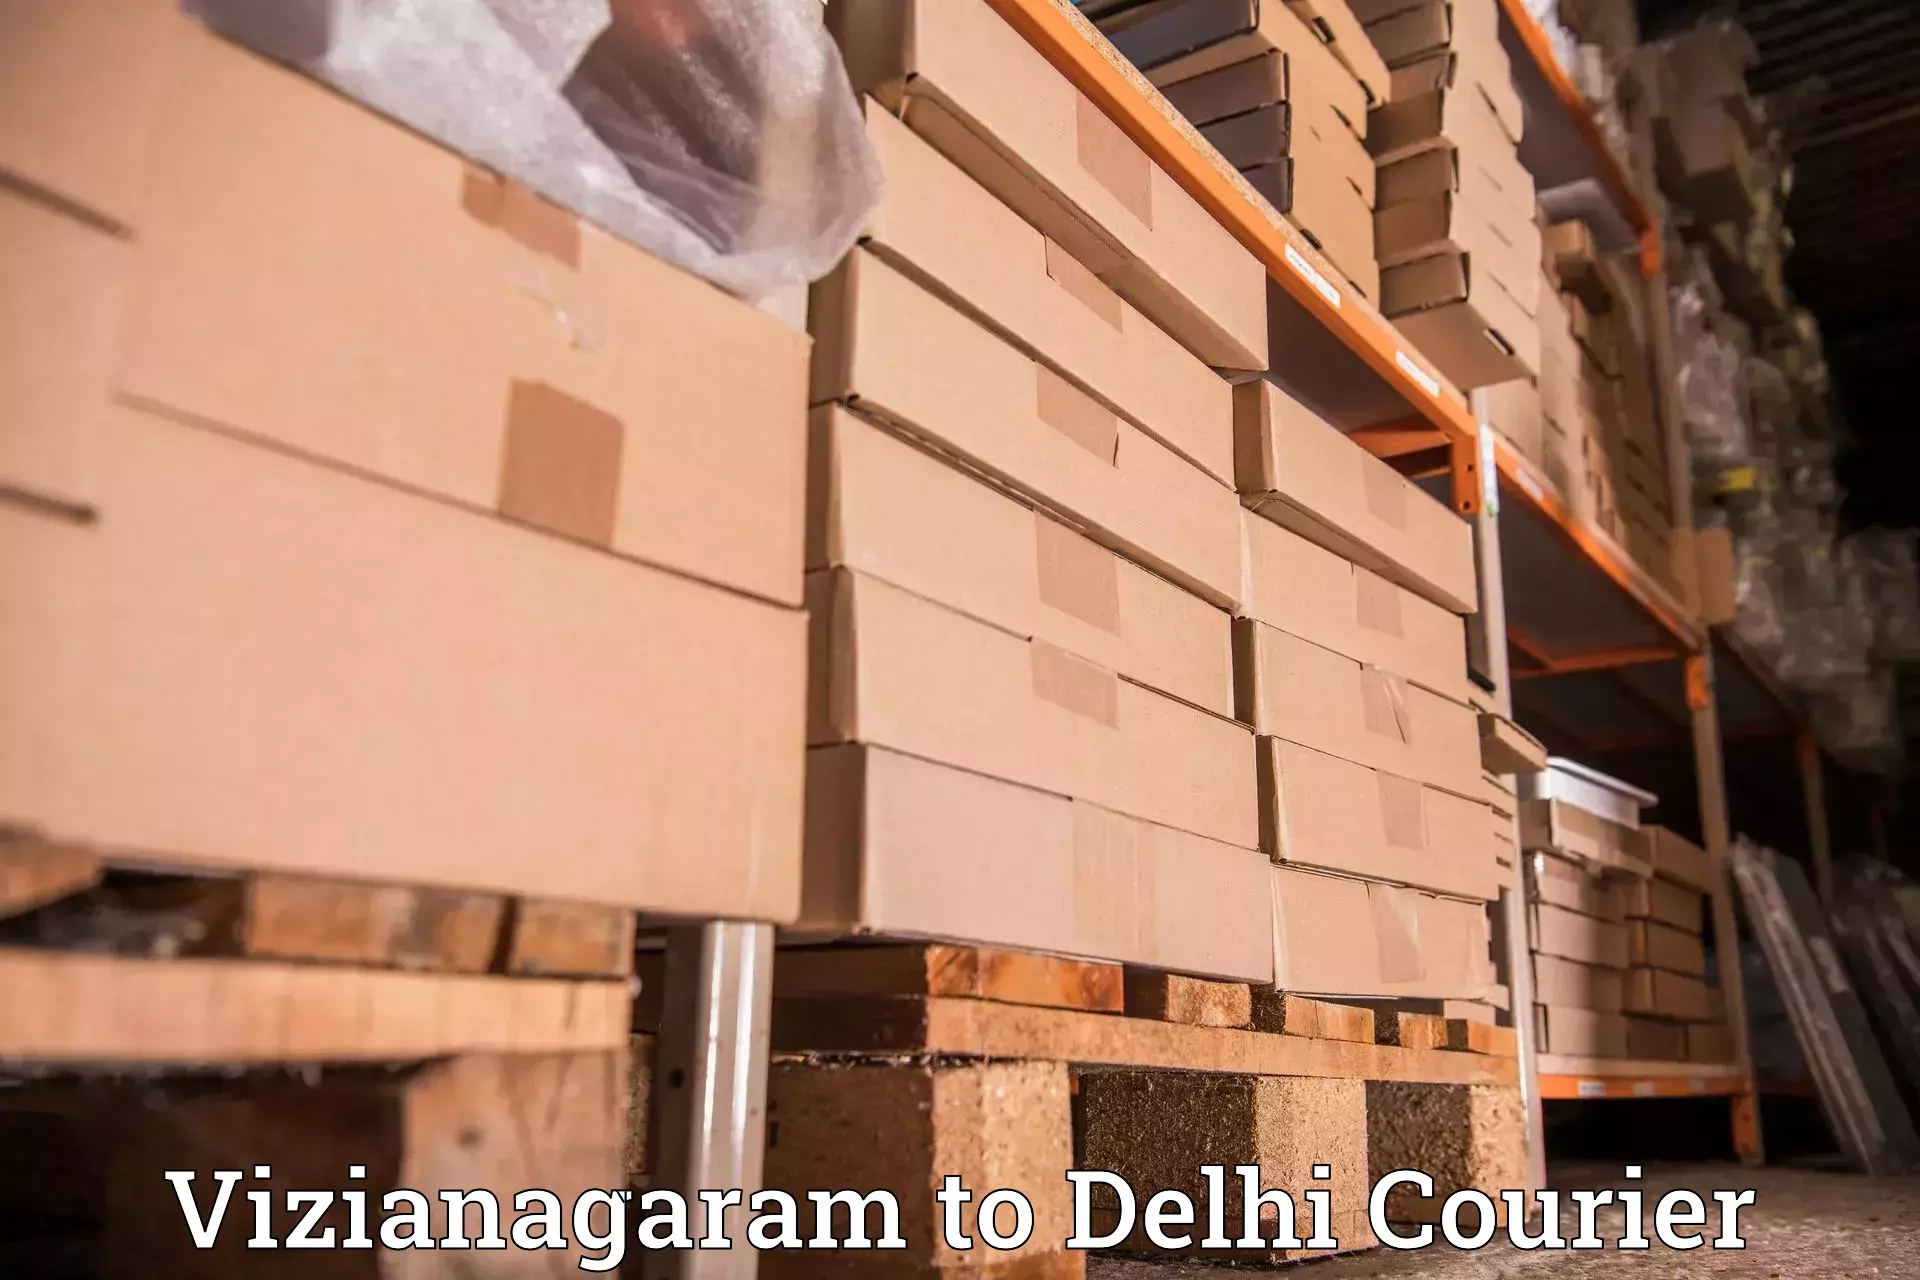 Local delivery service Vizianagaram to NIT Delhi